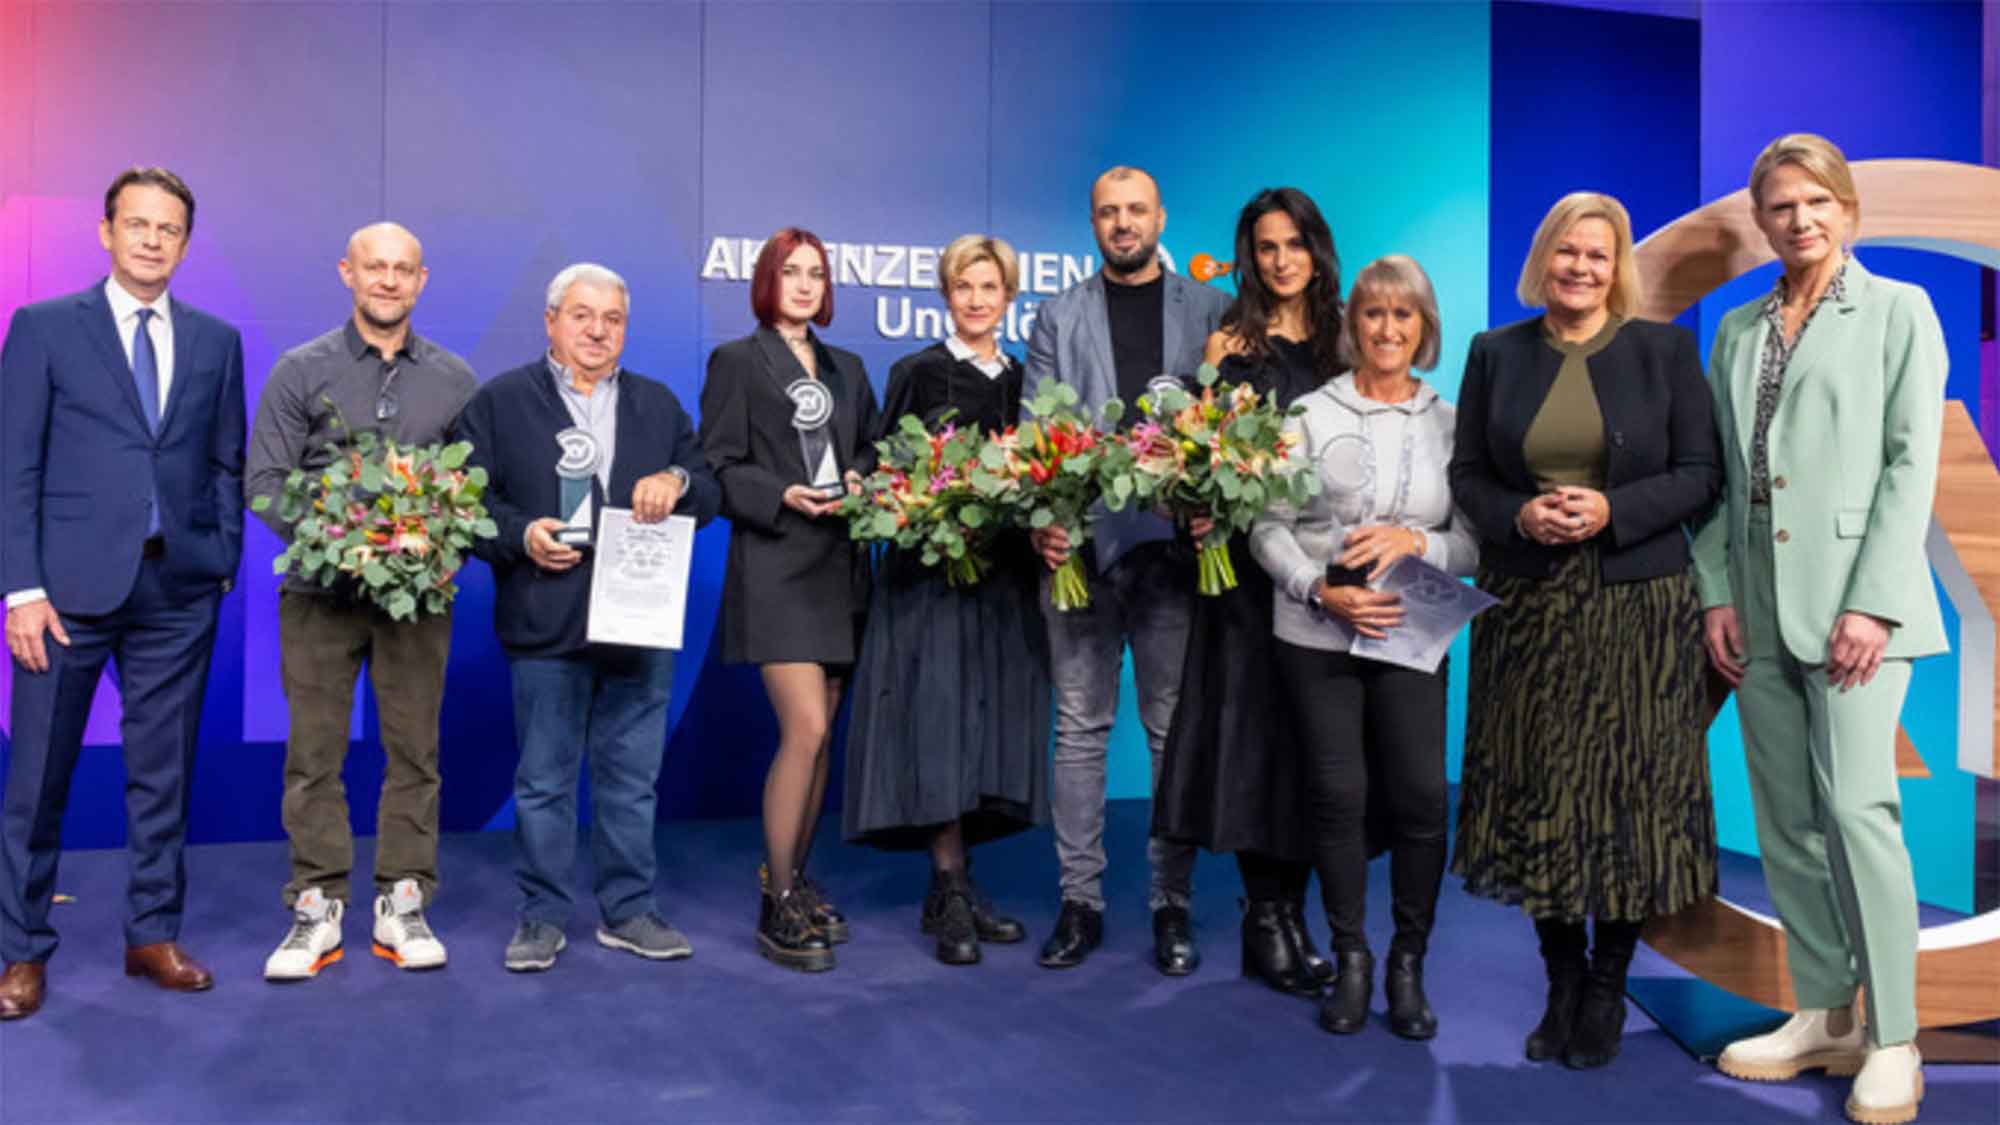 »XY Preis« für Zivilcourage: Bundesinnenministerin Nancy Faeser ehrt 4 Menschen für ihr mutiges Handeln